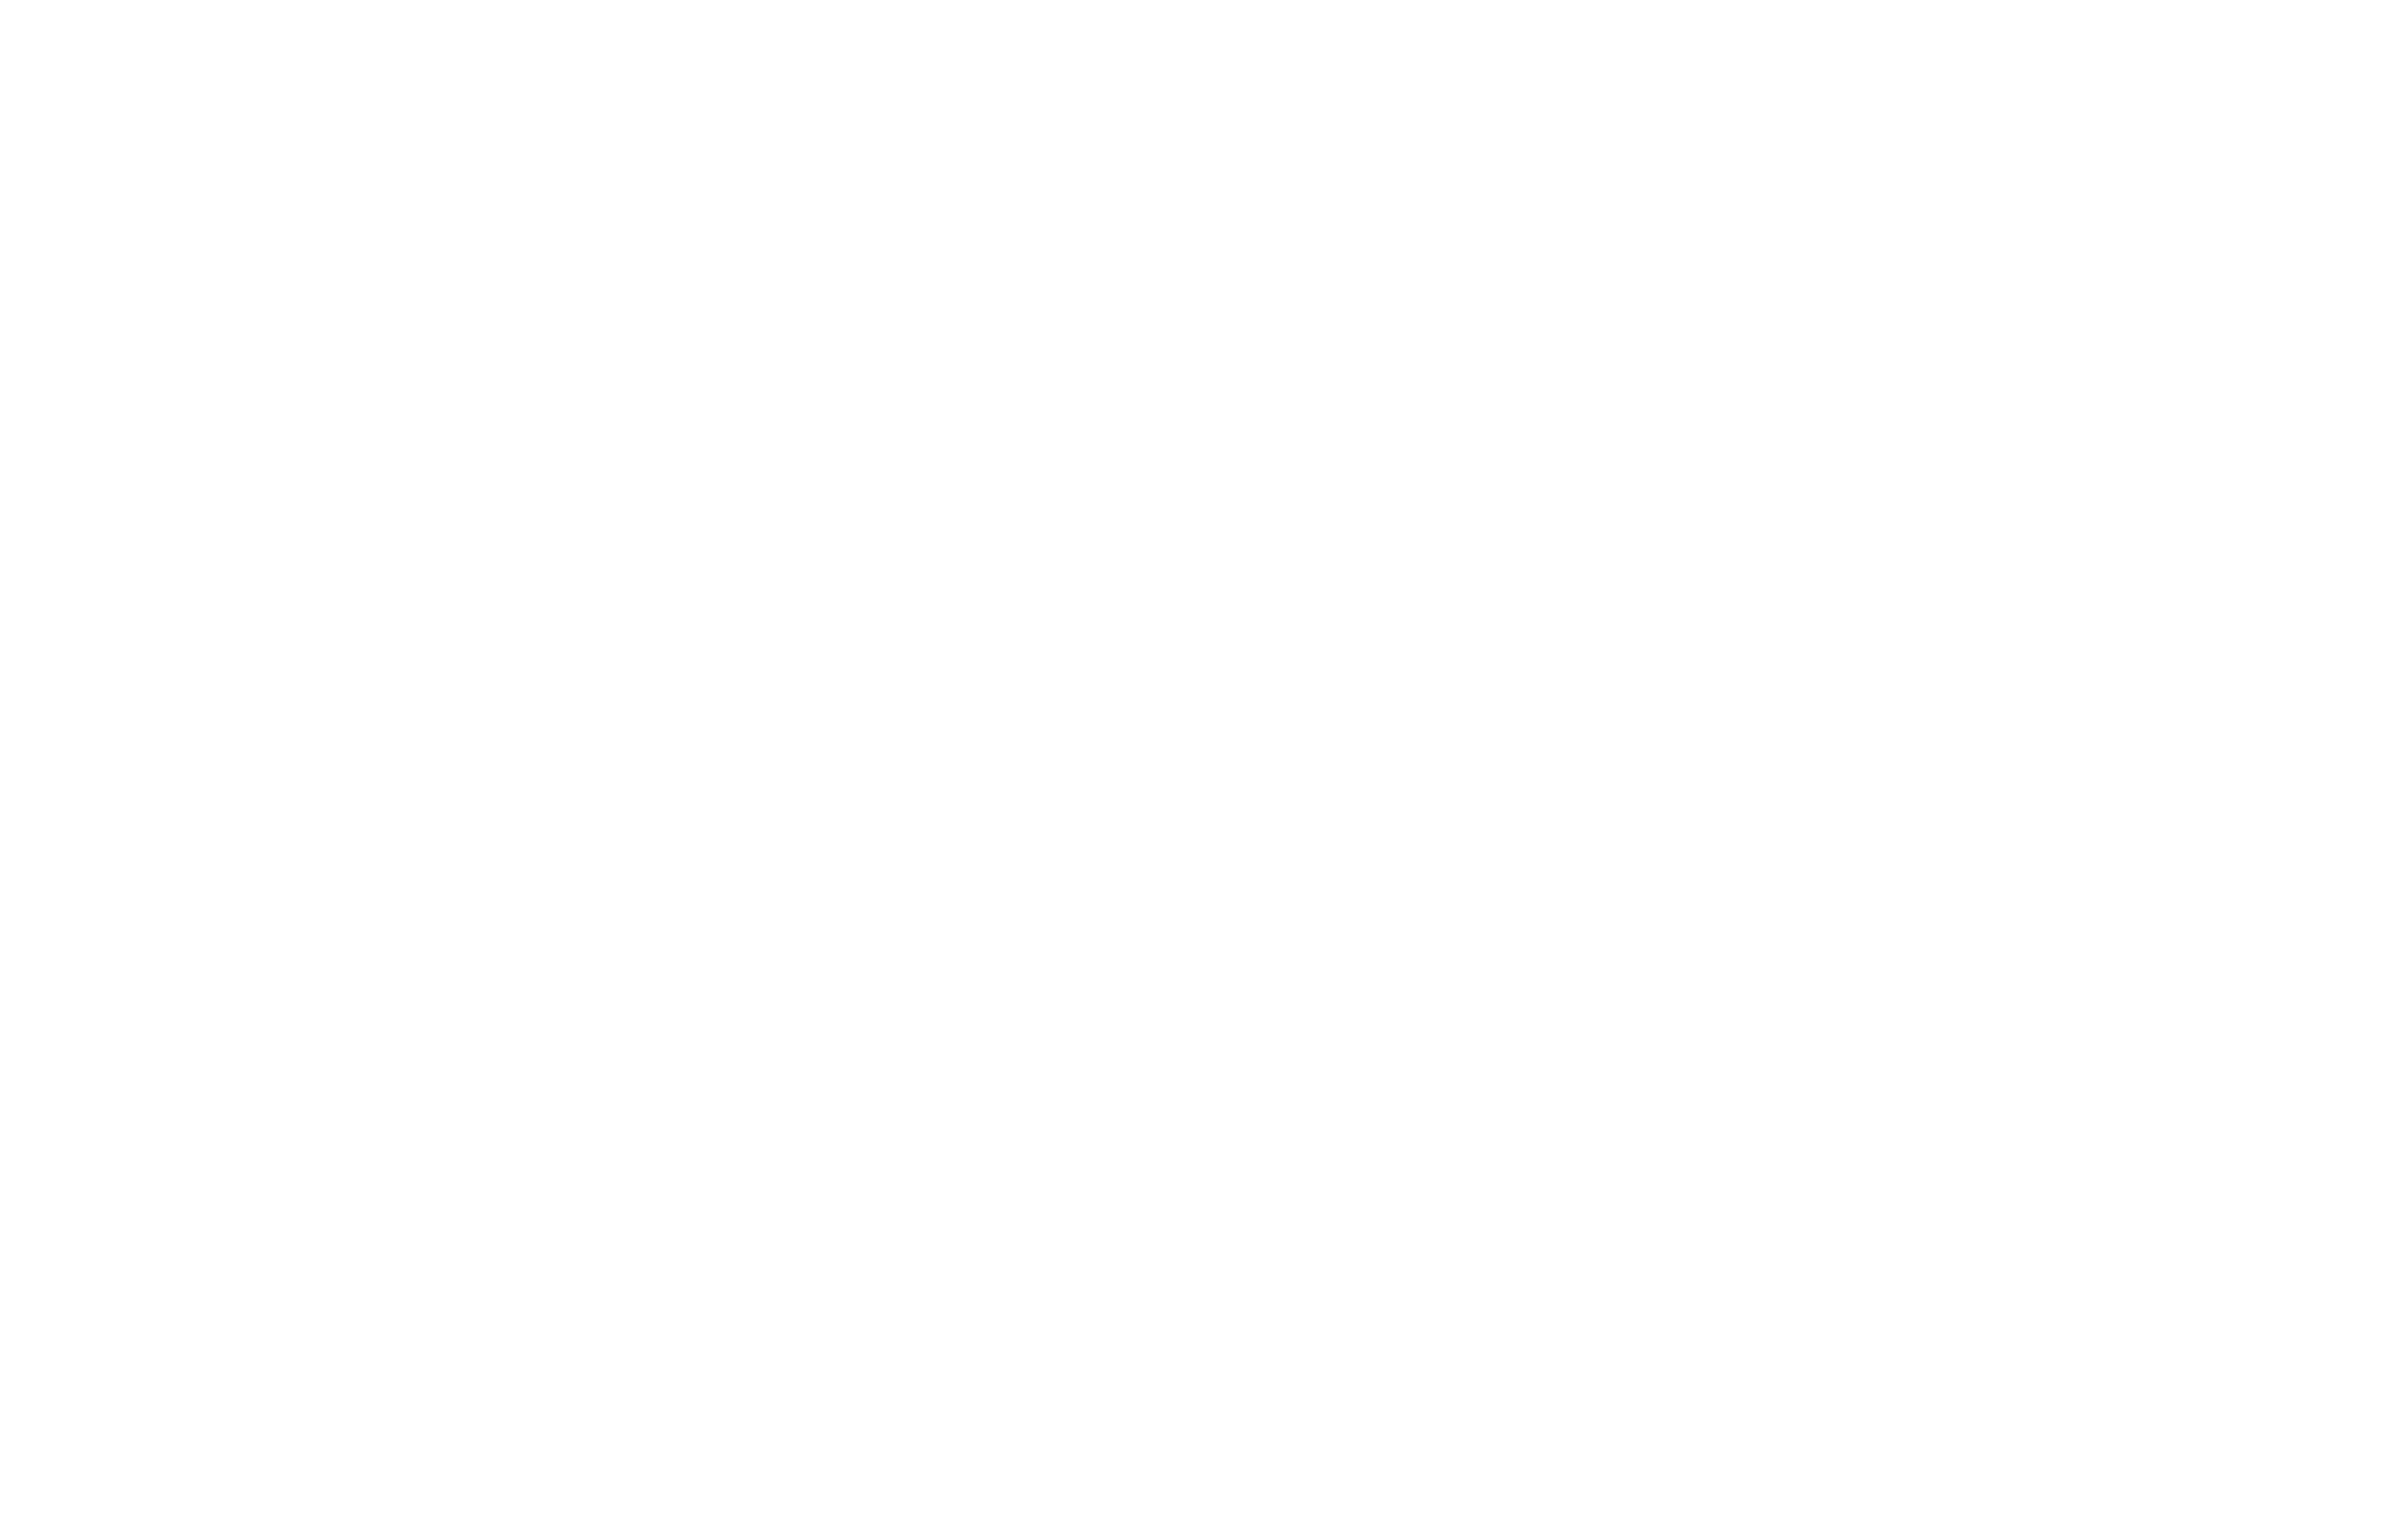 the blind woodturner